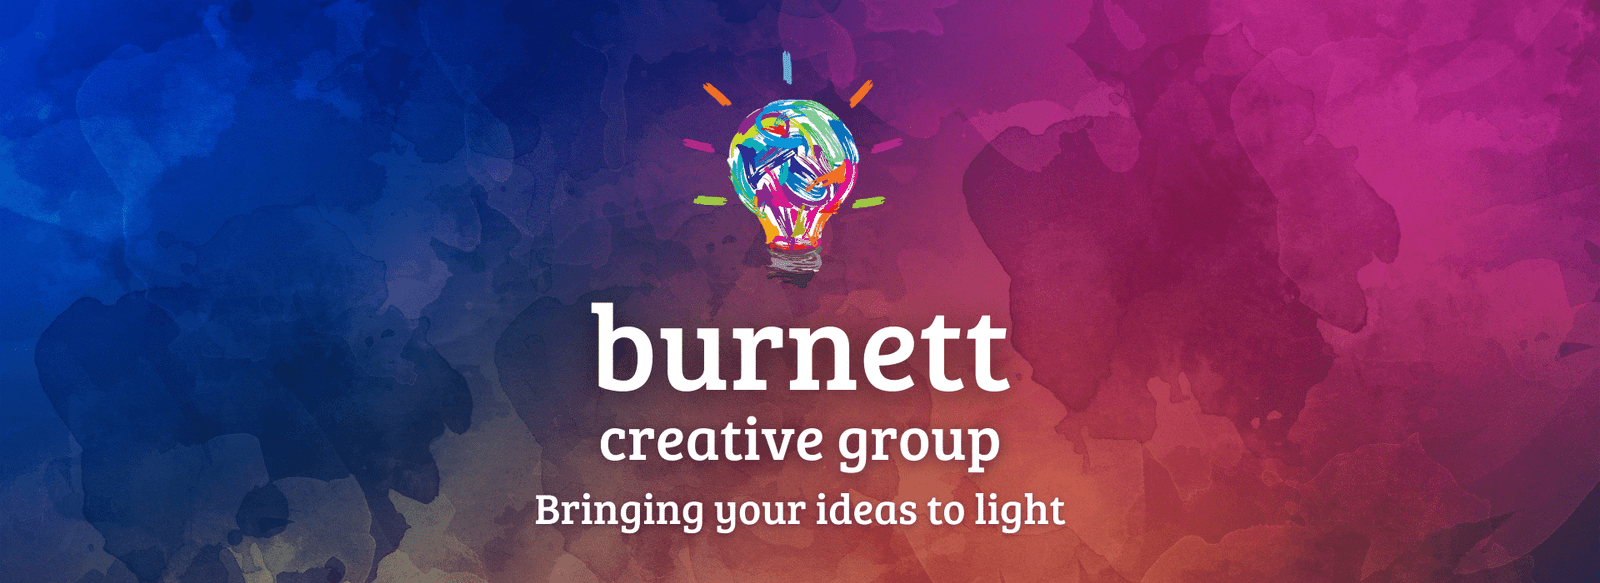 burnett creative group header